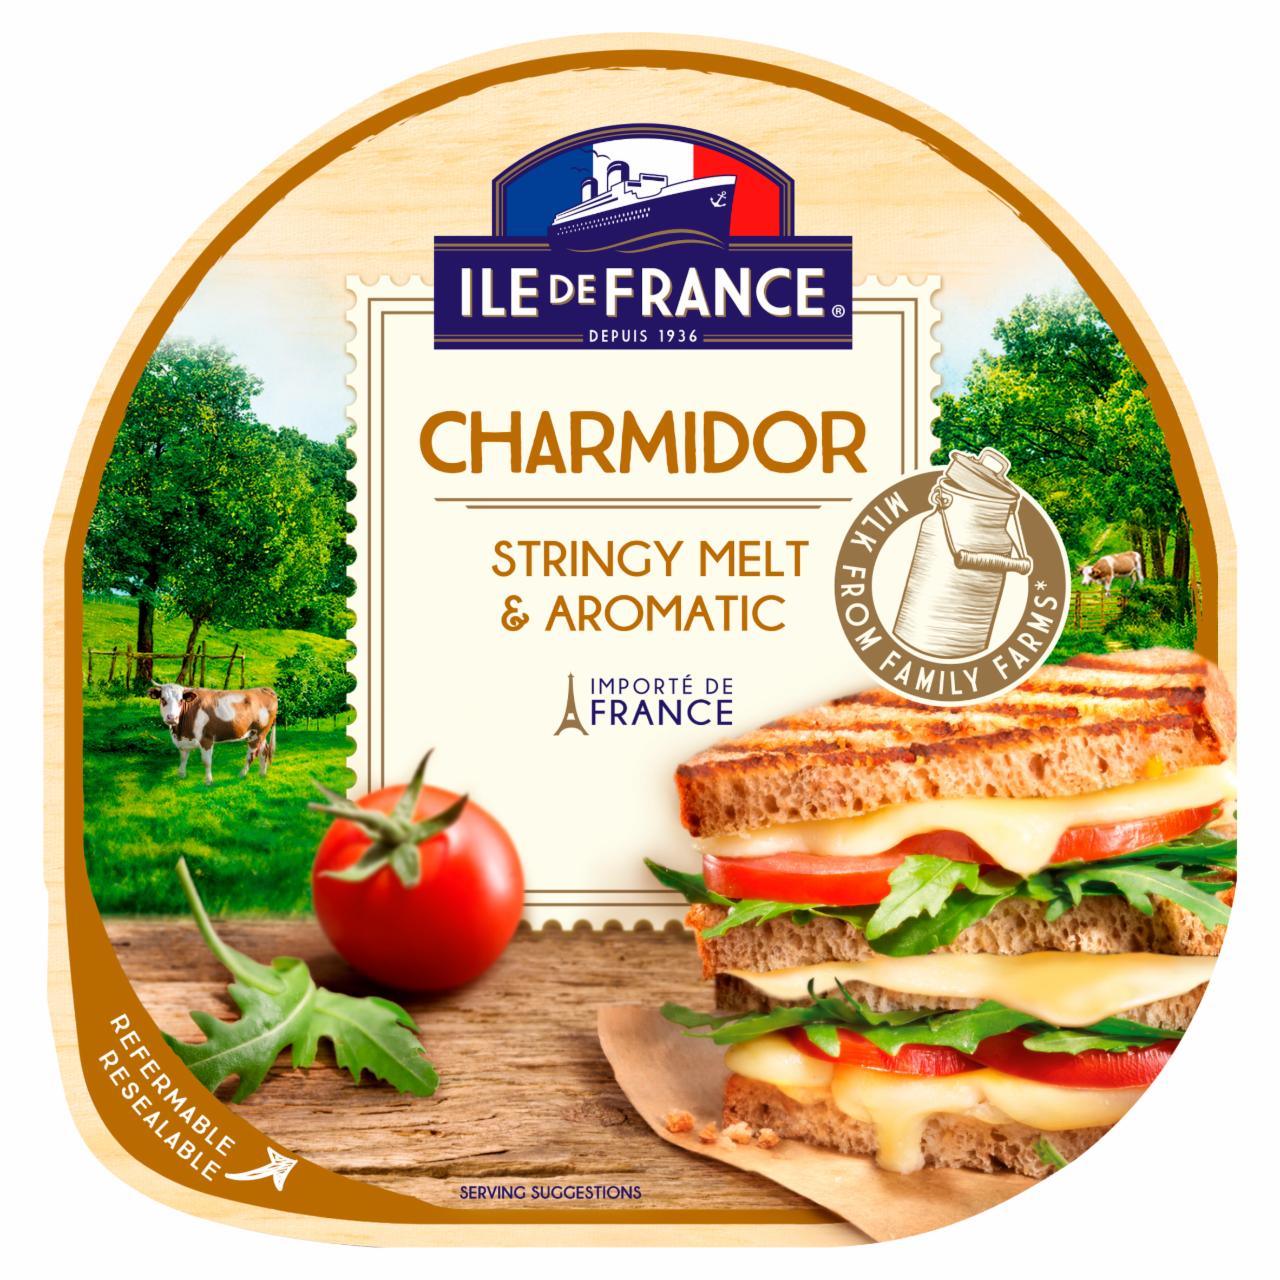 Képek - Ile de France Charmidor szeletelt zsíros félkemény sajt 100 g